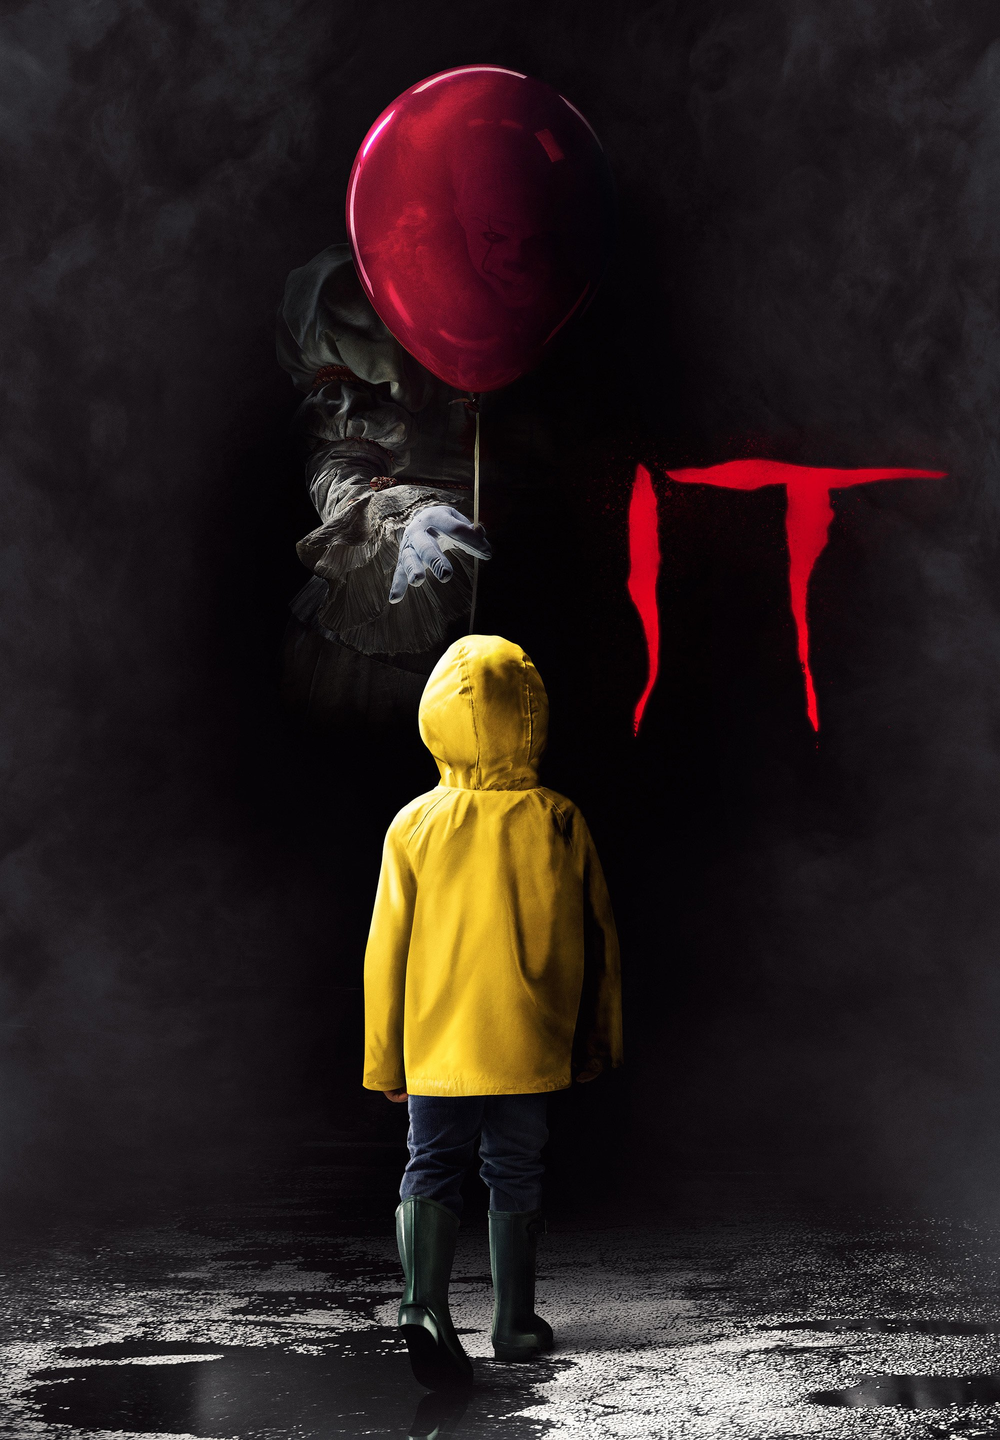 IT [HD] (2017)